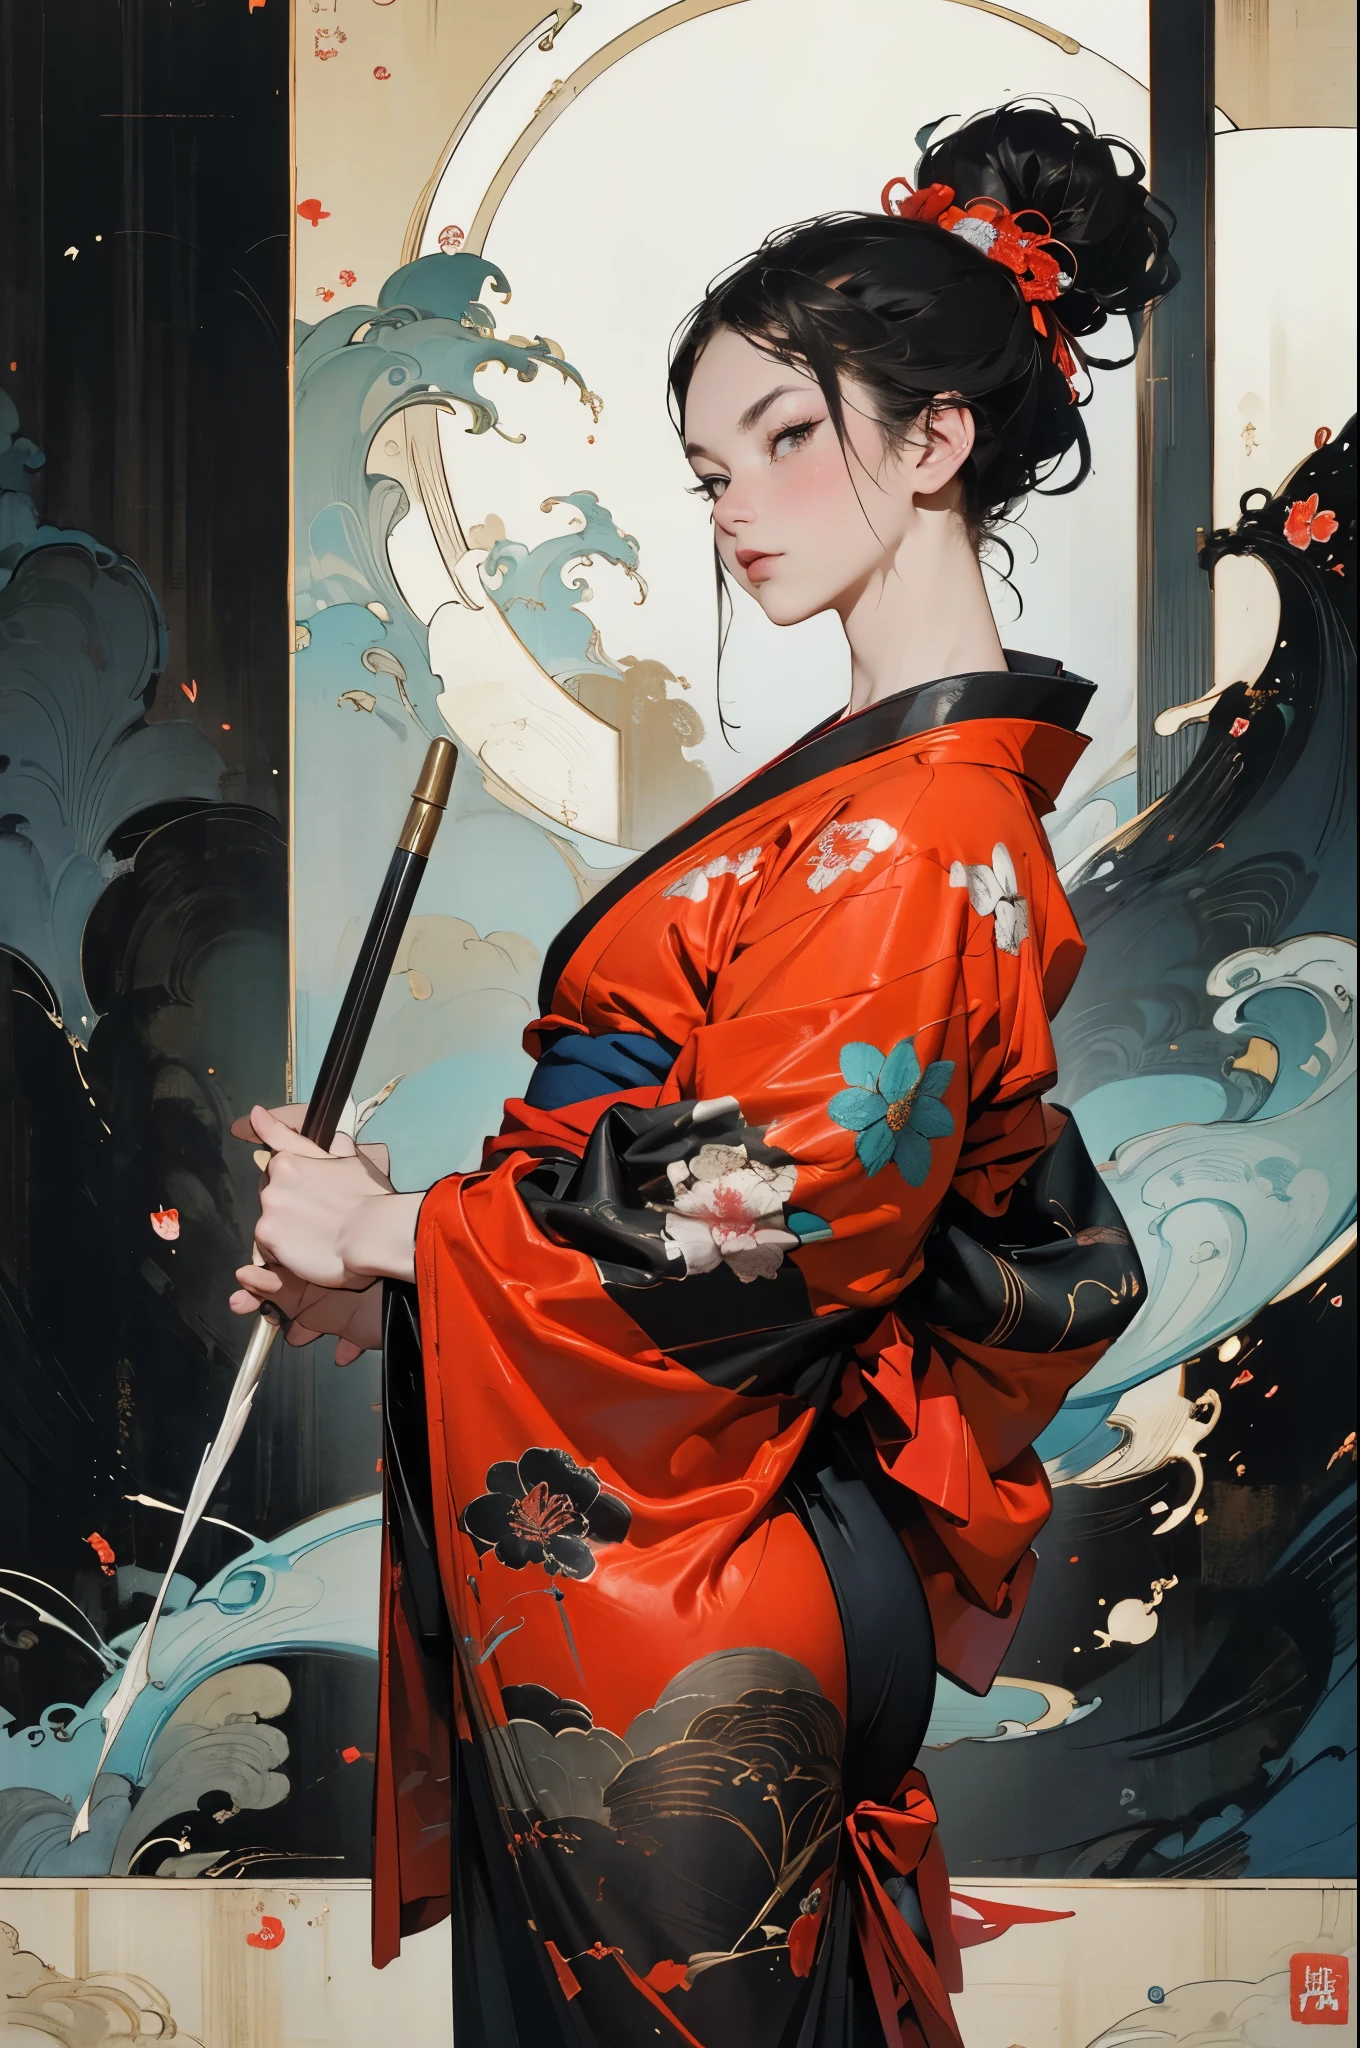 Подожди, воин сексуальный, красивое лицо, Вкусная компания, привлекательная фигура, Носить сексуальное открытое кимоно. Работа создана в технике, напоминающей японские картины тушью......, 具有大胆的笔触和Монохромная цветовая палитра. художник&#39;Мастерская техника раскрывает интенсивность и мощь образа.&#39;ощущение присутствия，С высочайшим качеством, Идеально захватывайте каждую деталь благодаря сверхвысокому разрешению. Текстуры и замысловатые узоры на кимоно воспроизводятся с исключительной точностью.. Освещение тщательно продумано，Улучшите драматизм, Имеет глубокие тени и тонкие блики.. общий, Произведения искусства излучают элегантность и силу., Сочетание традиционной японской эстетики с современным ощущением.. Монохромная цветовая палитра, Объединить детали, Создавайте захватывающие и захватывающие впечатления для вашей аудитории.